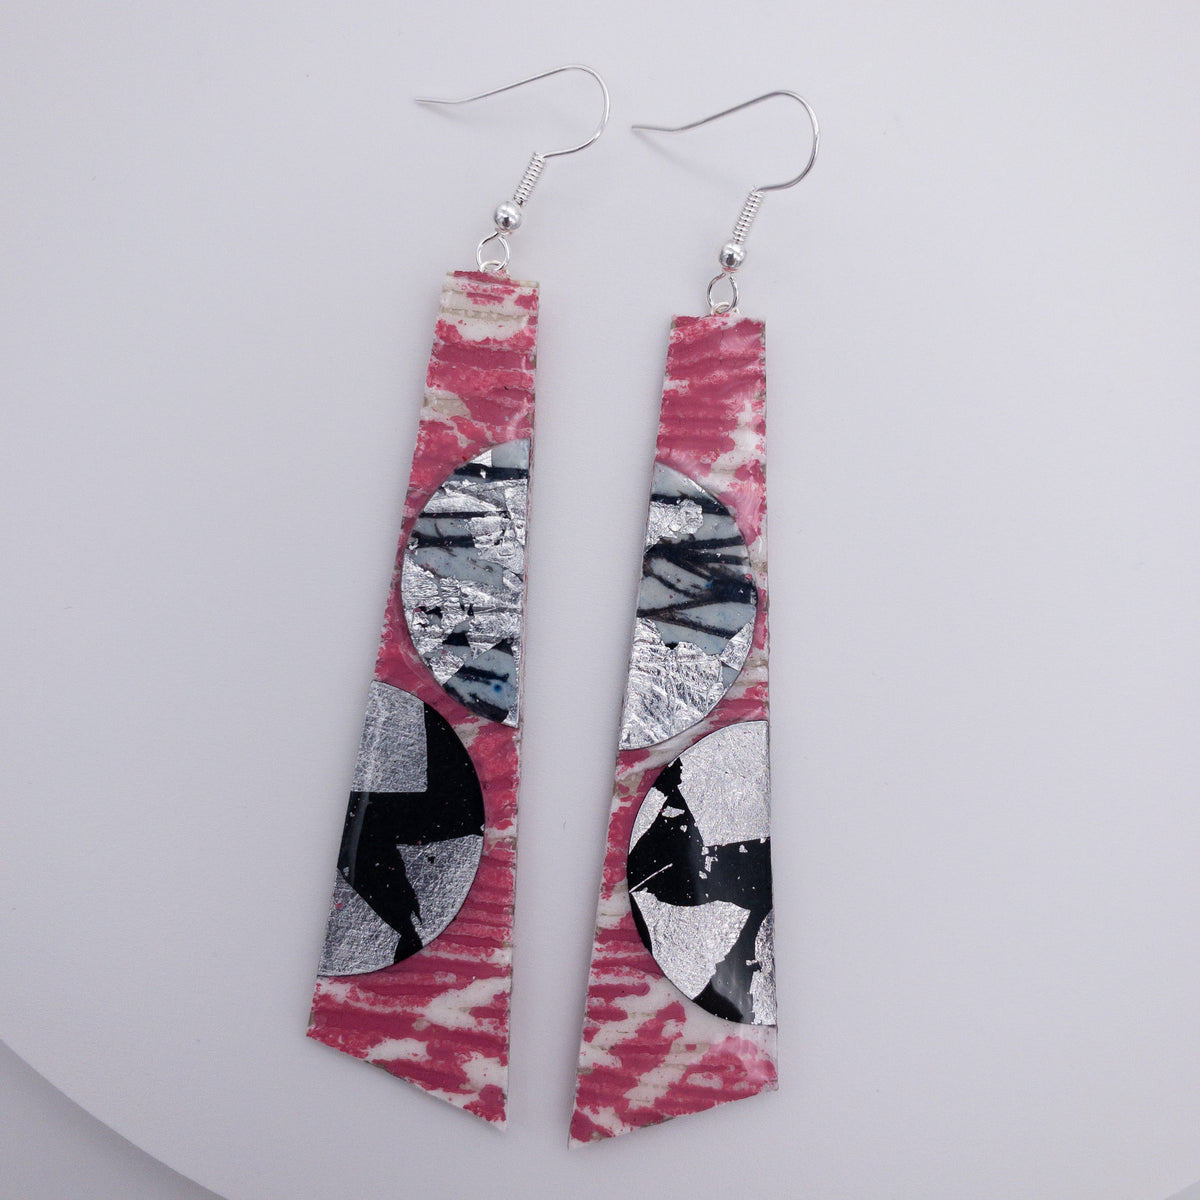 Hoop-La batik textile earrings in pink/grey/silver/black